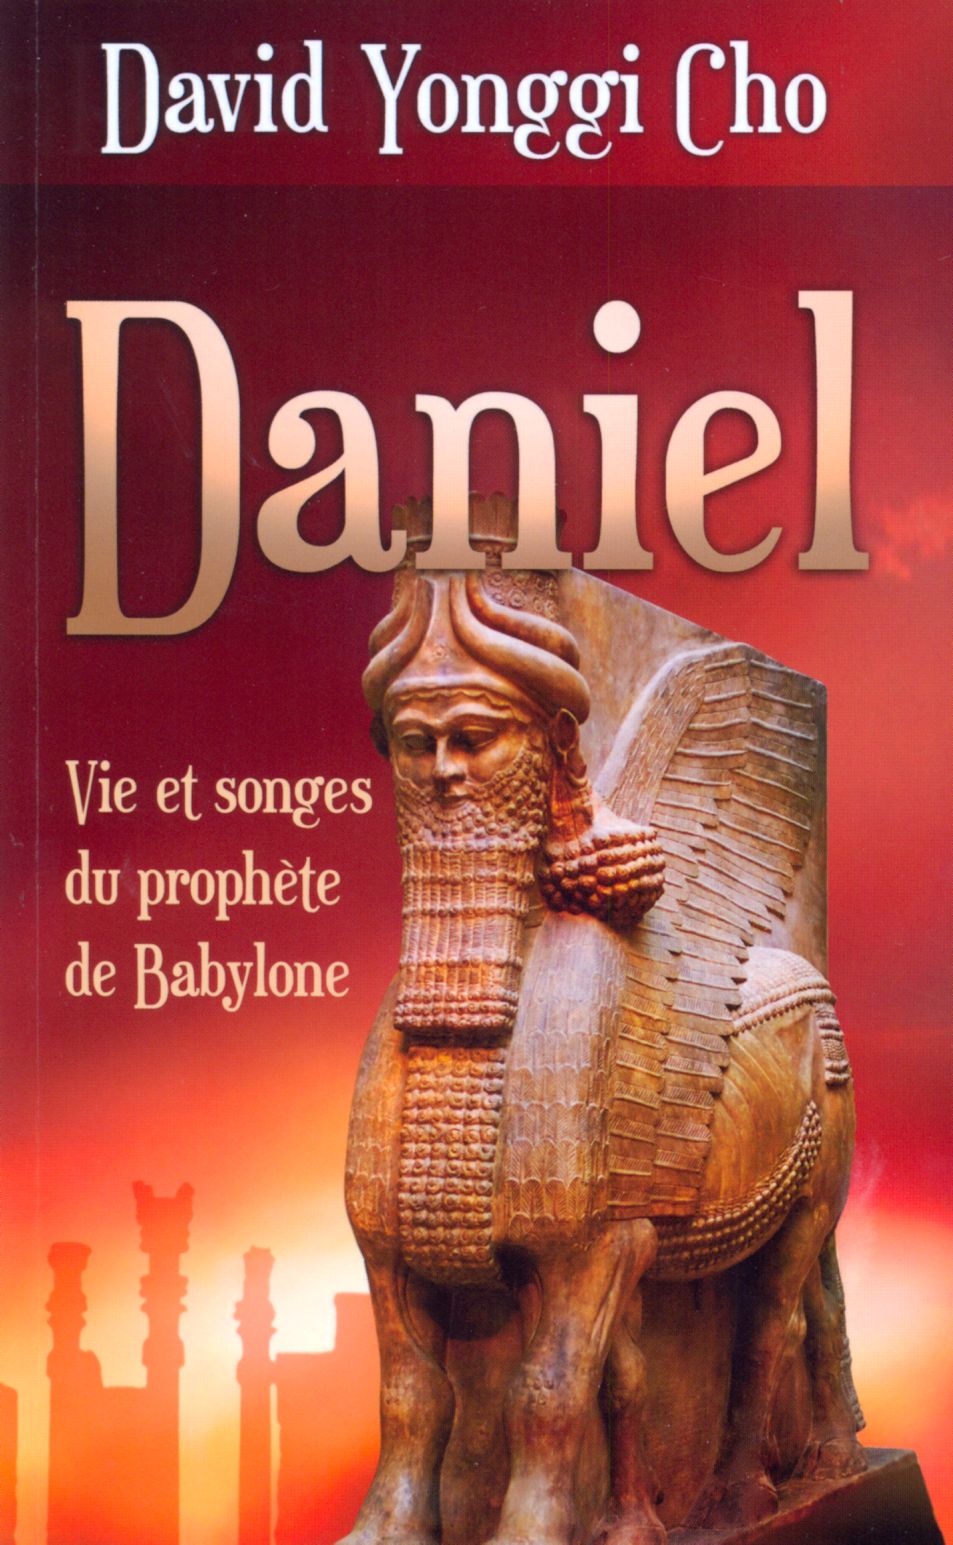 Daniel - Vie et songes du prophète de Babylone